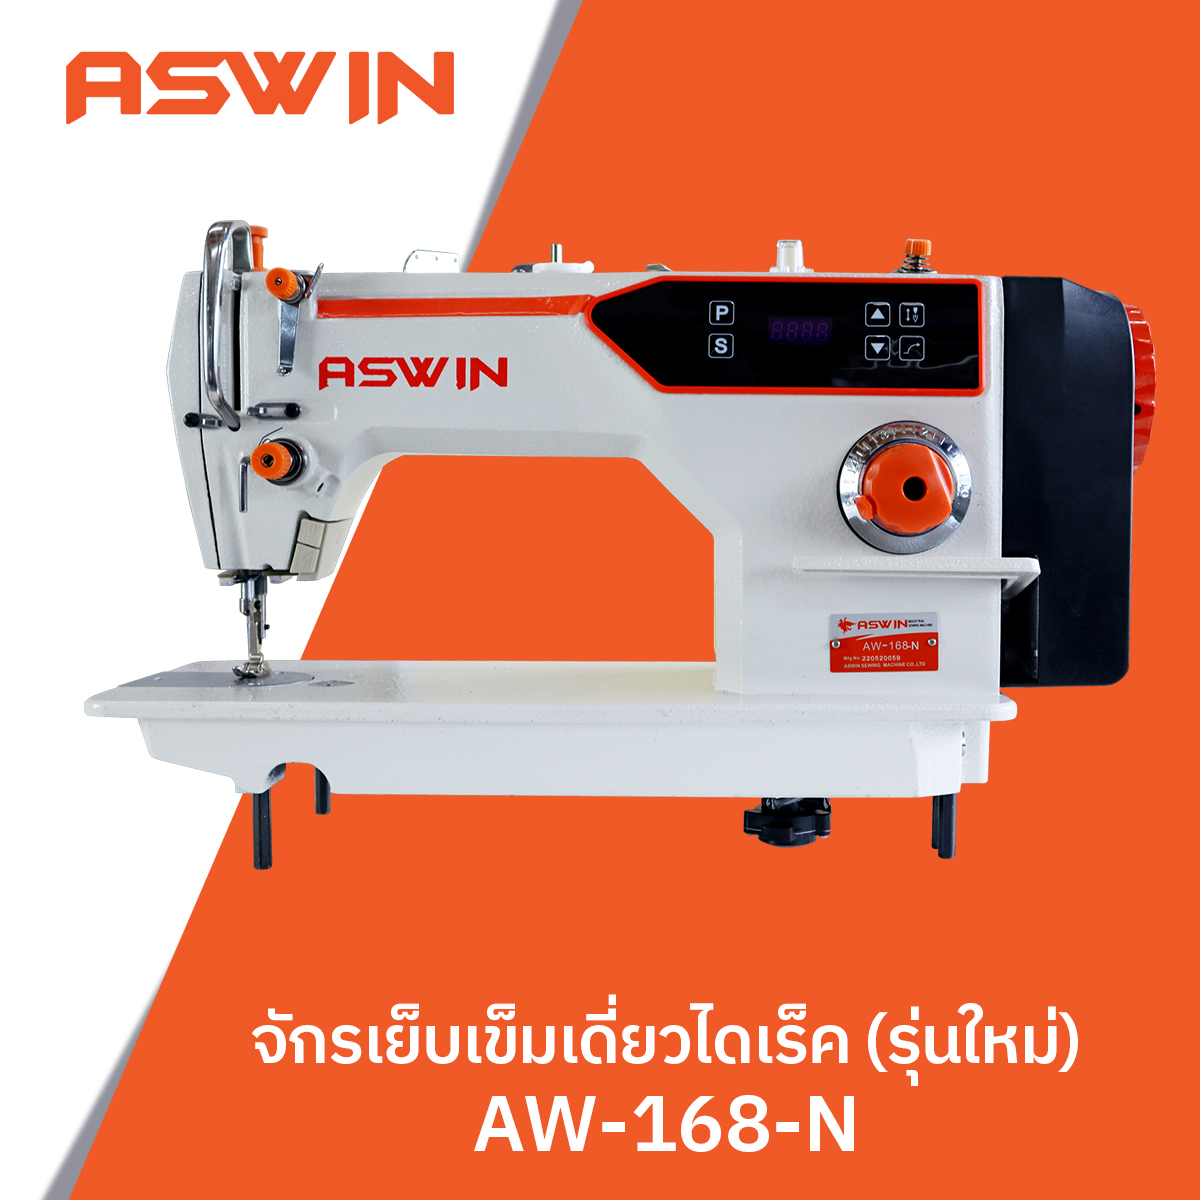 จักรเย็บเข็มเดี่ยวไดเร็ค ASWIN  รุ่น AW-168-N